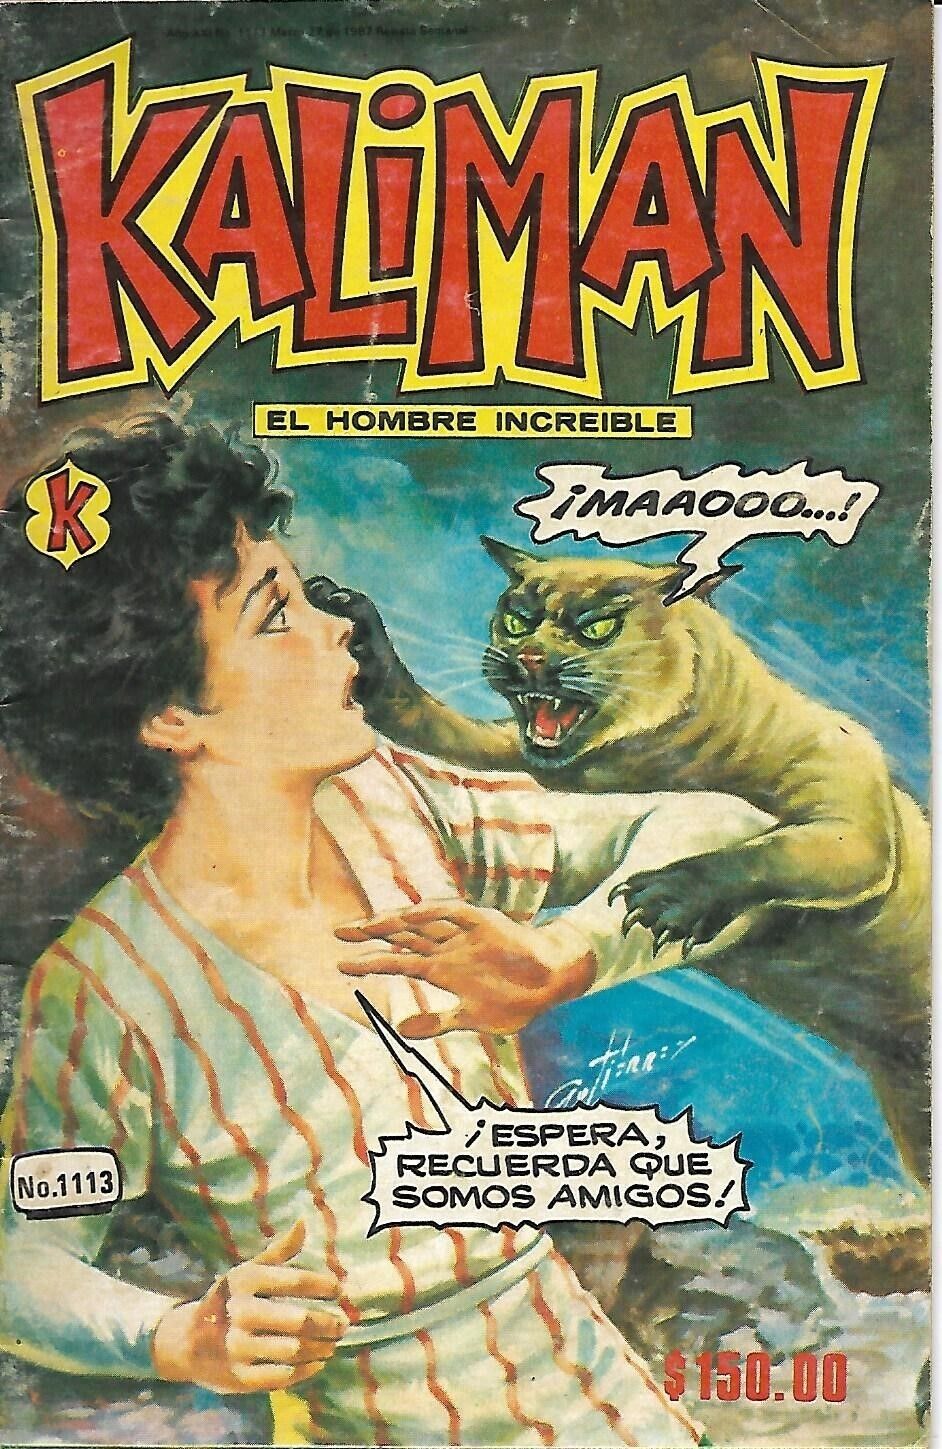 Kaliman El Hombre Increible #1113 - Marzo 27, 1987